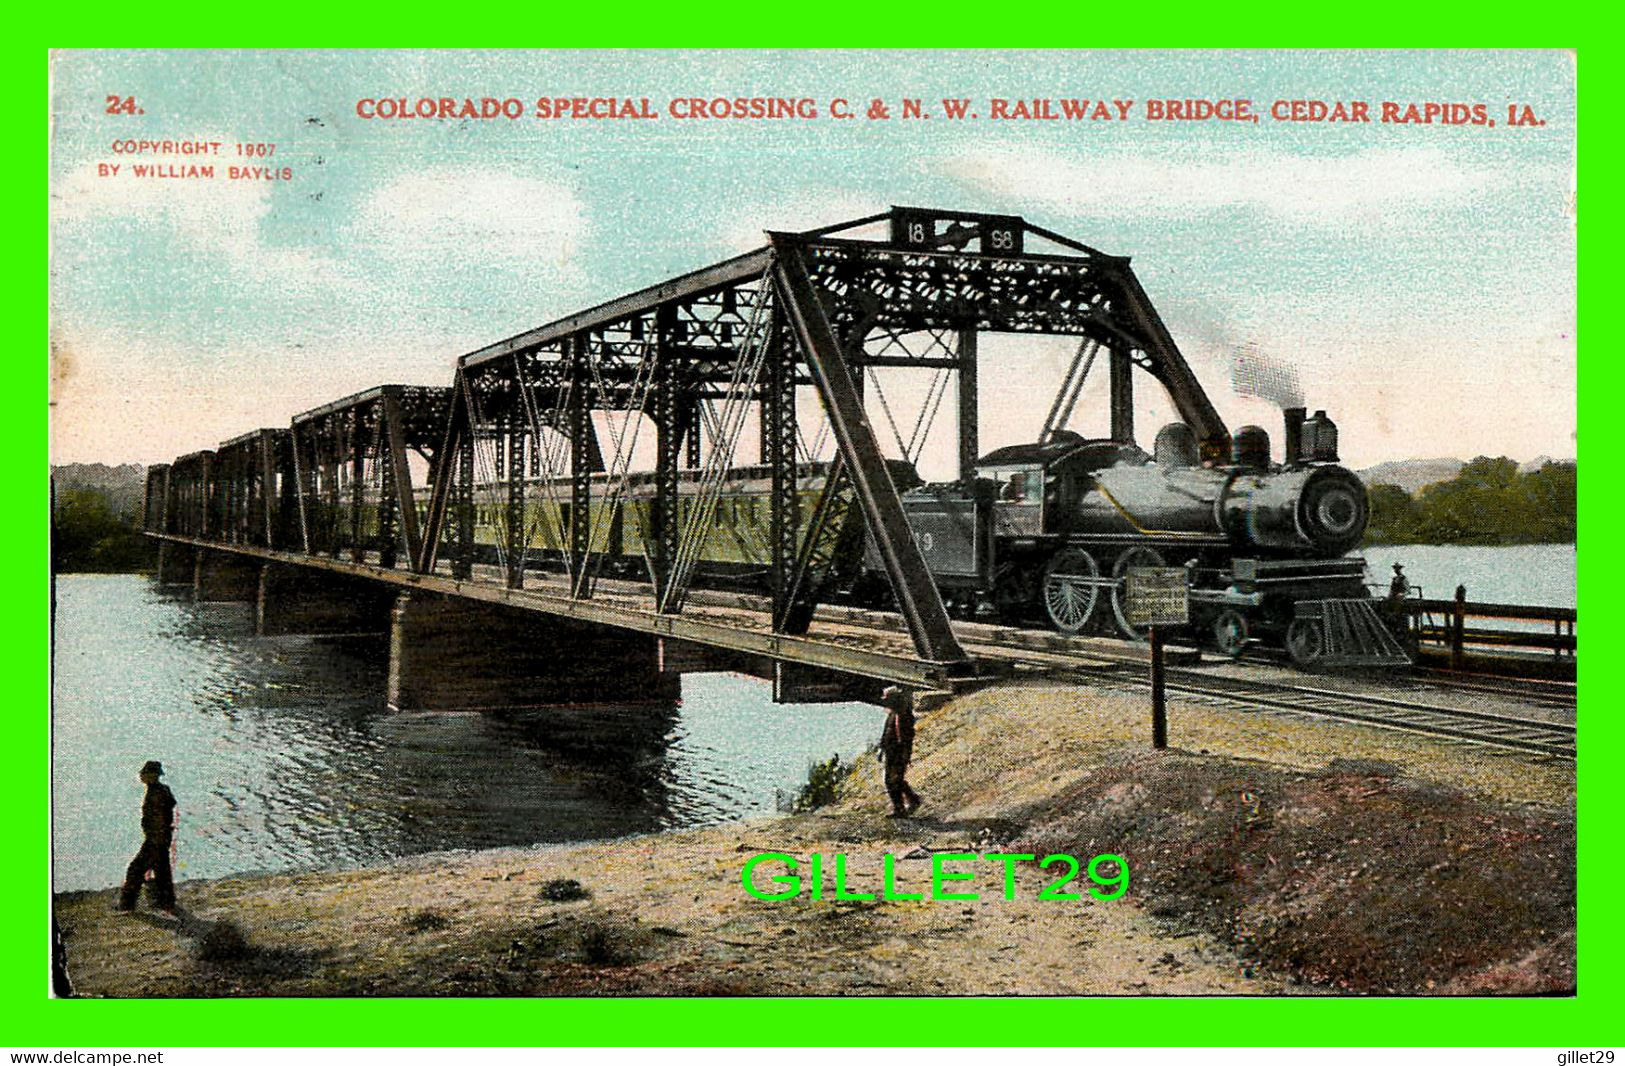 CEDAR RAPIDS, IA - TRAINS AT COLORADO SPECIAL CROSSING C. & N.W. RAILWAY BRIDGE - TRAVEL IN 1945 - - Cedar Rapids